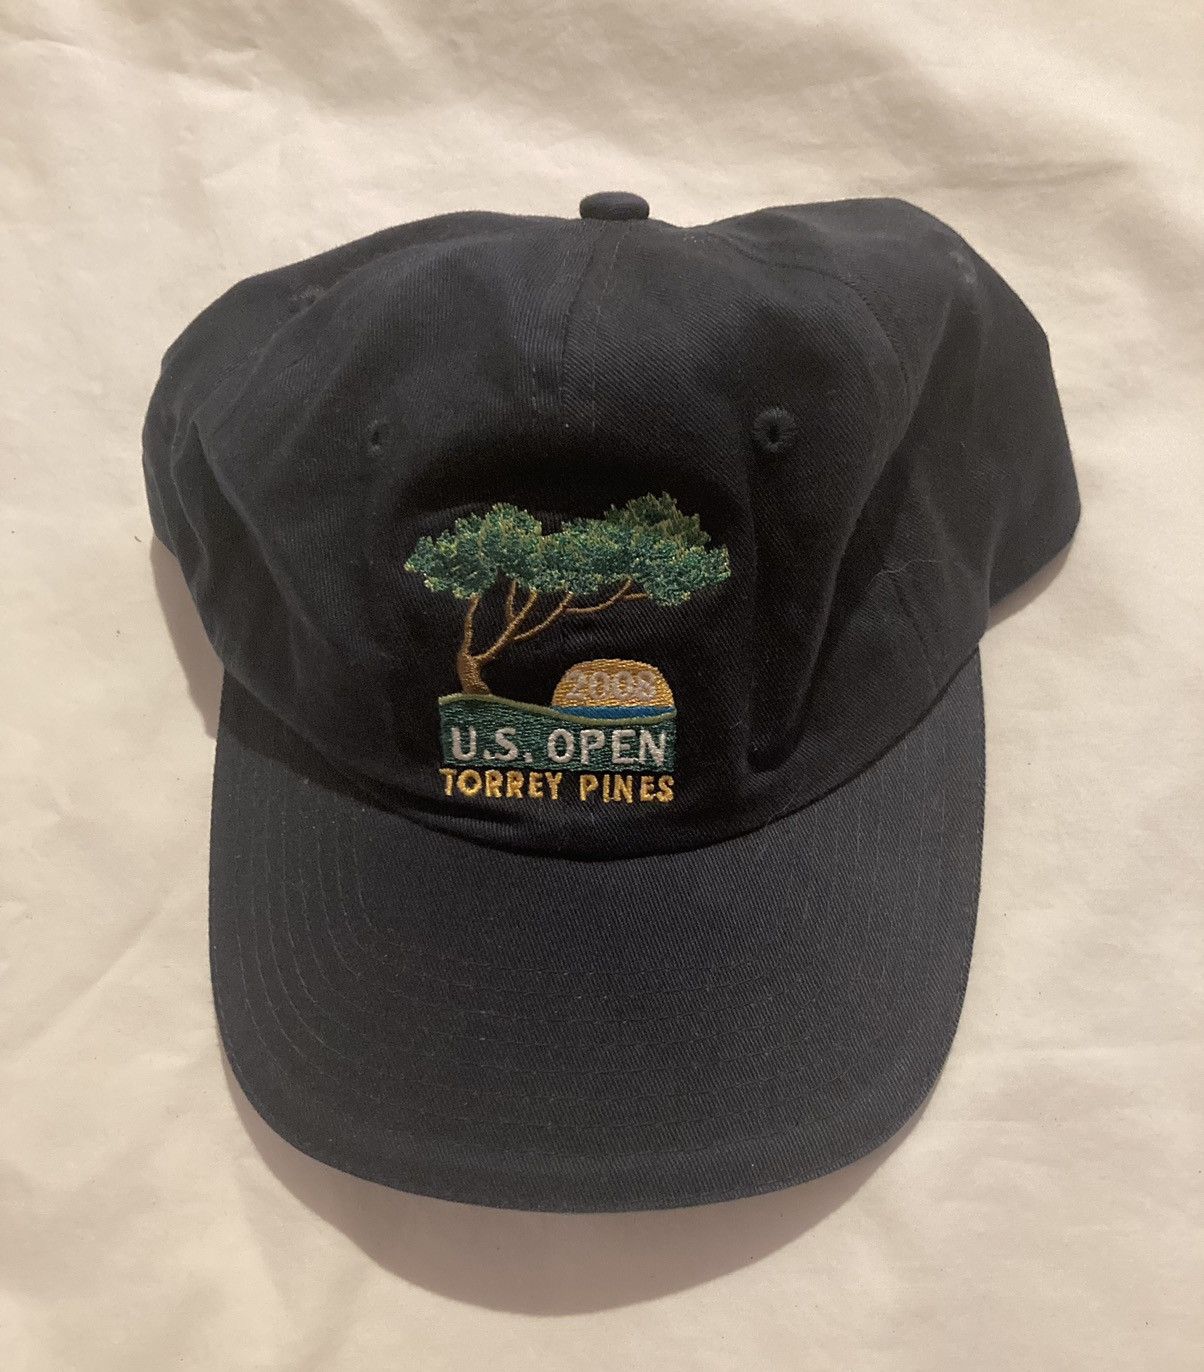 Made In Usa Vintage Strap Back U.S. Open 2008 Torrey Pines Usga hat